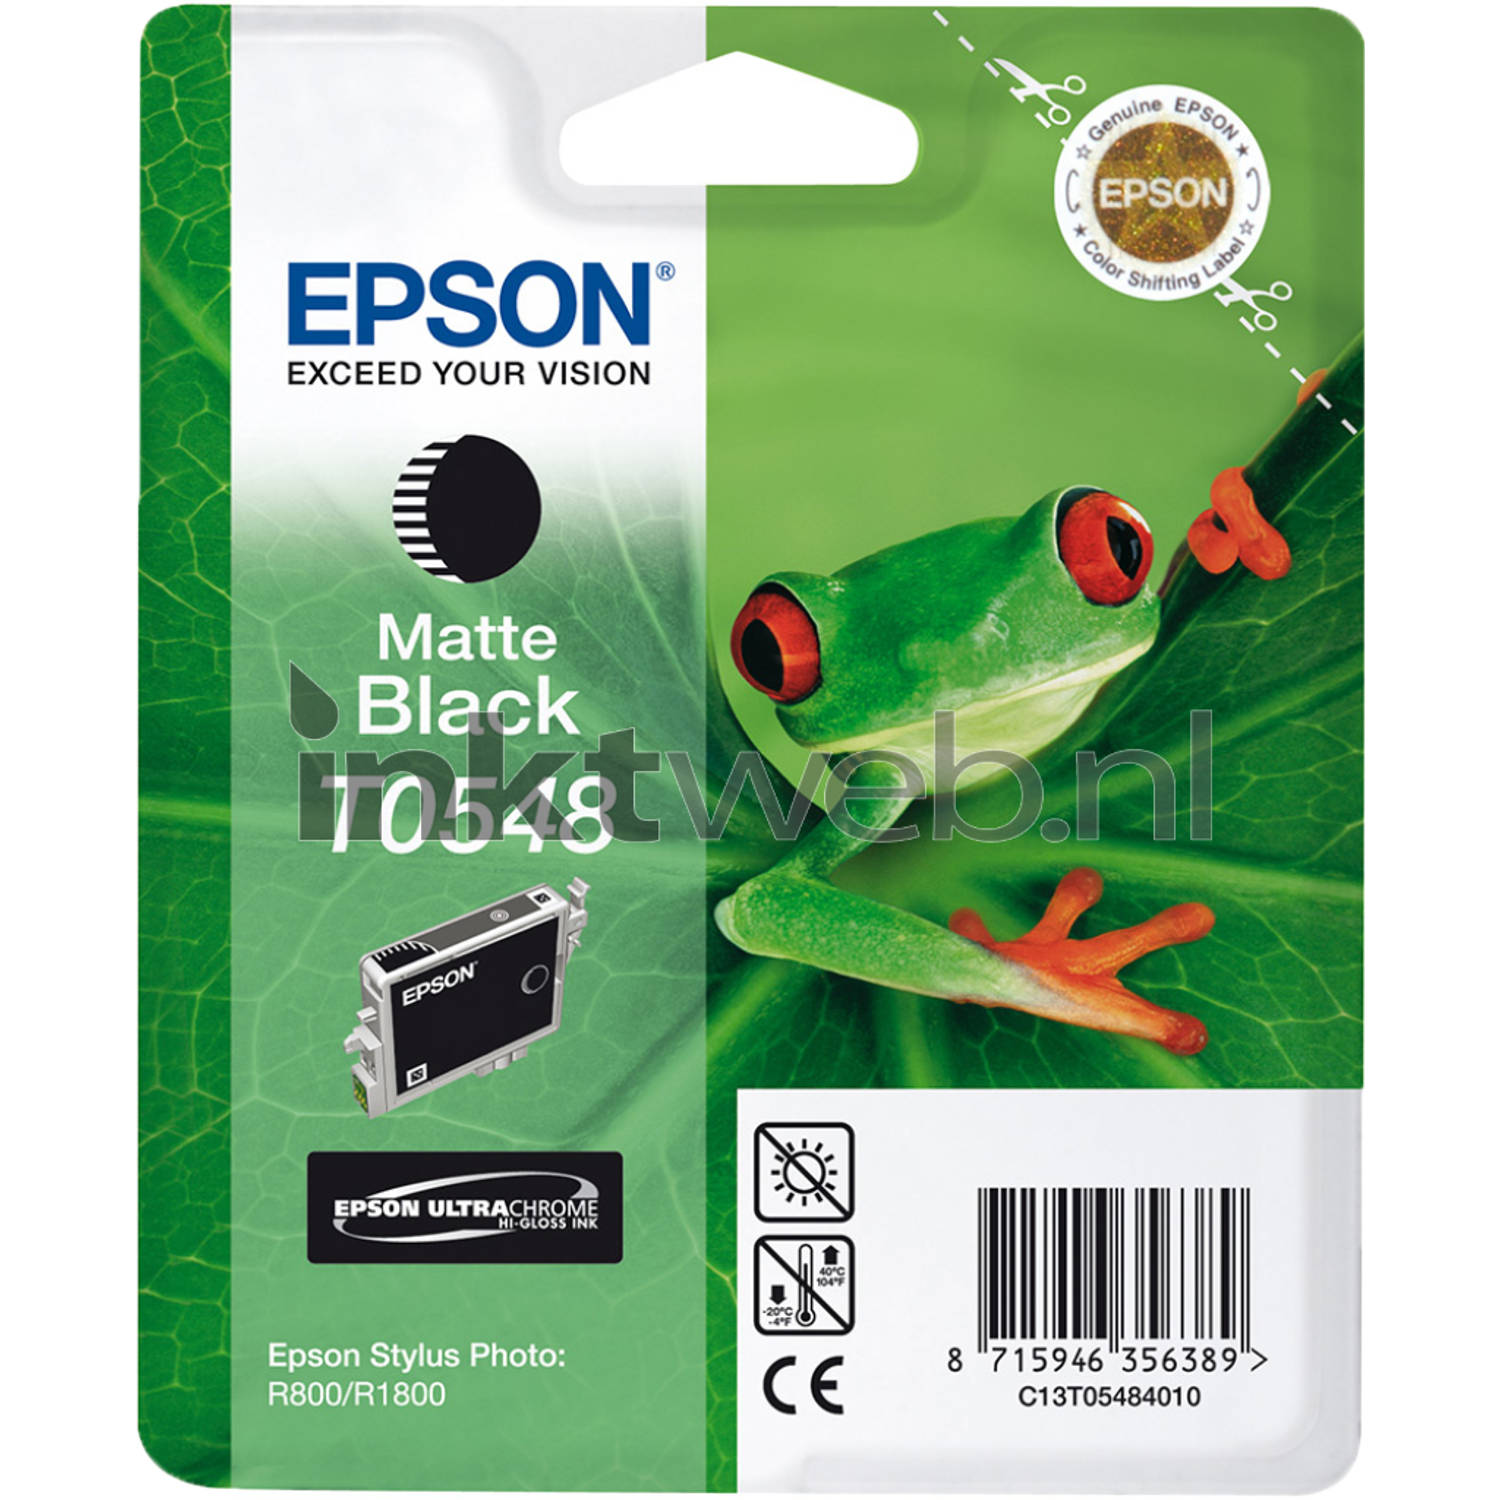 Epson T0548 mat zwart cartridge